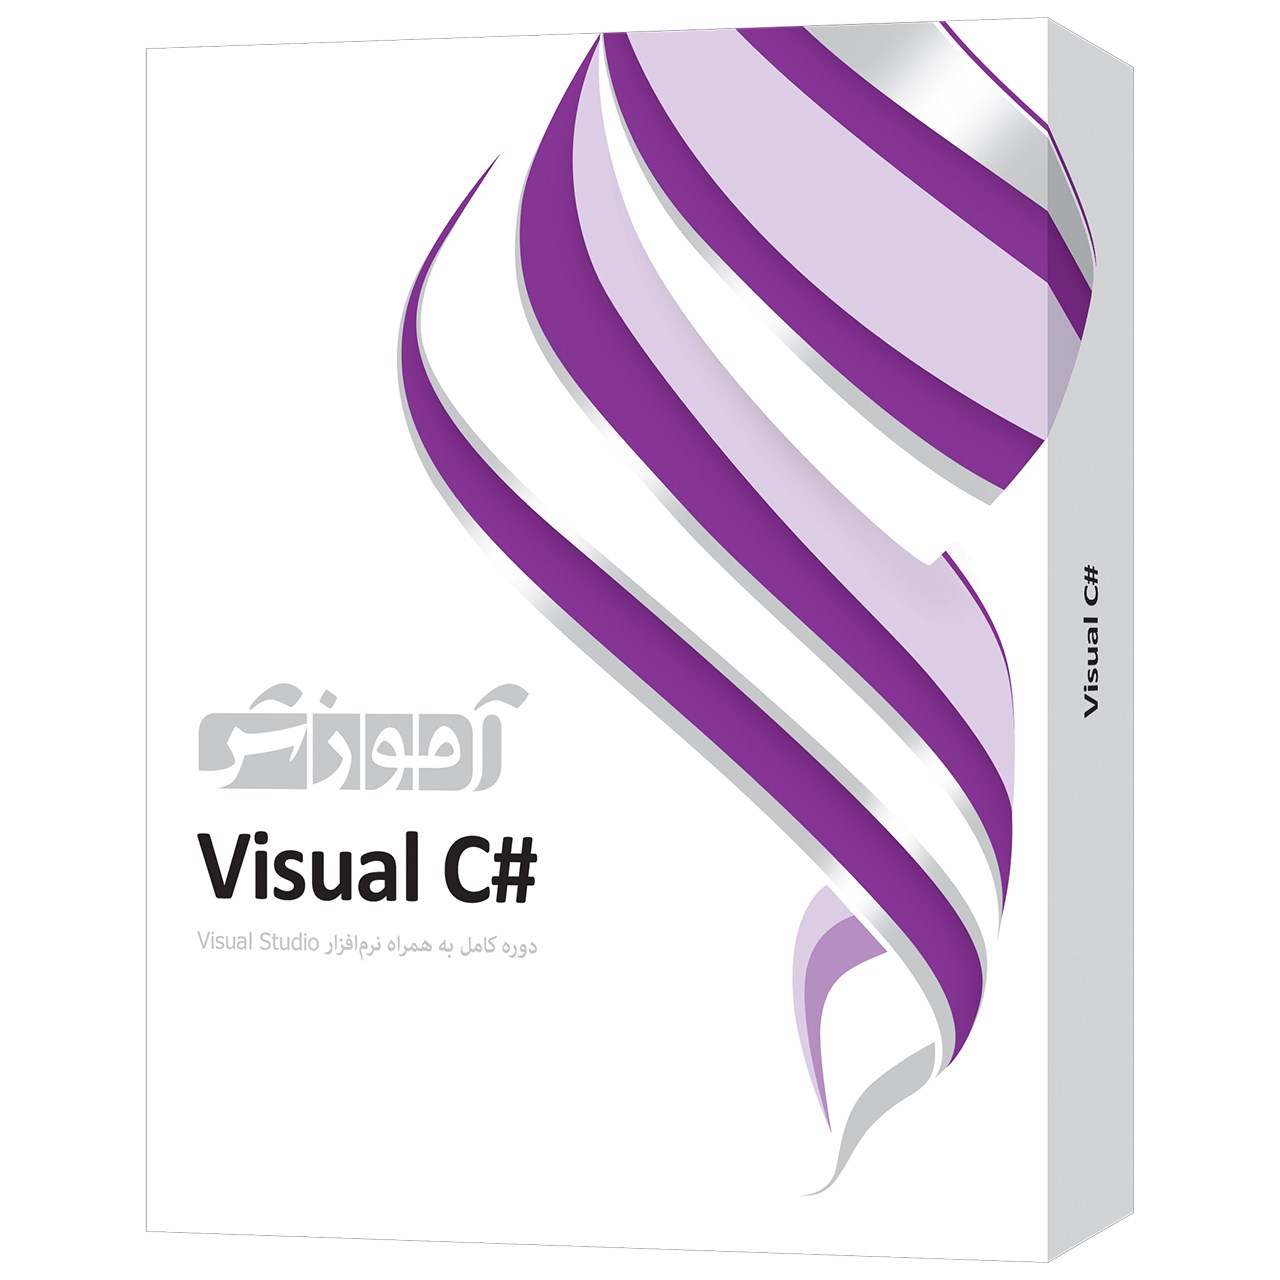 نقد و بررسی نرم افزار آموزش #Visual C سطح مقدماتی تا پیشرفته شرکت پرند توسط خریداران